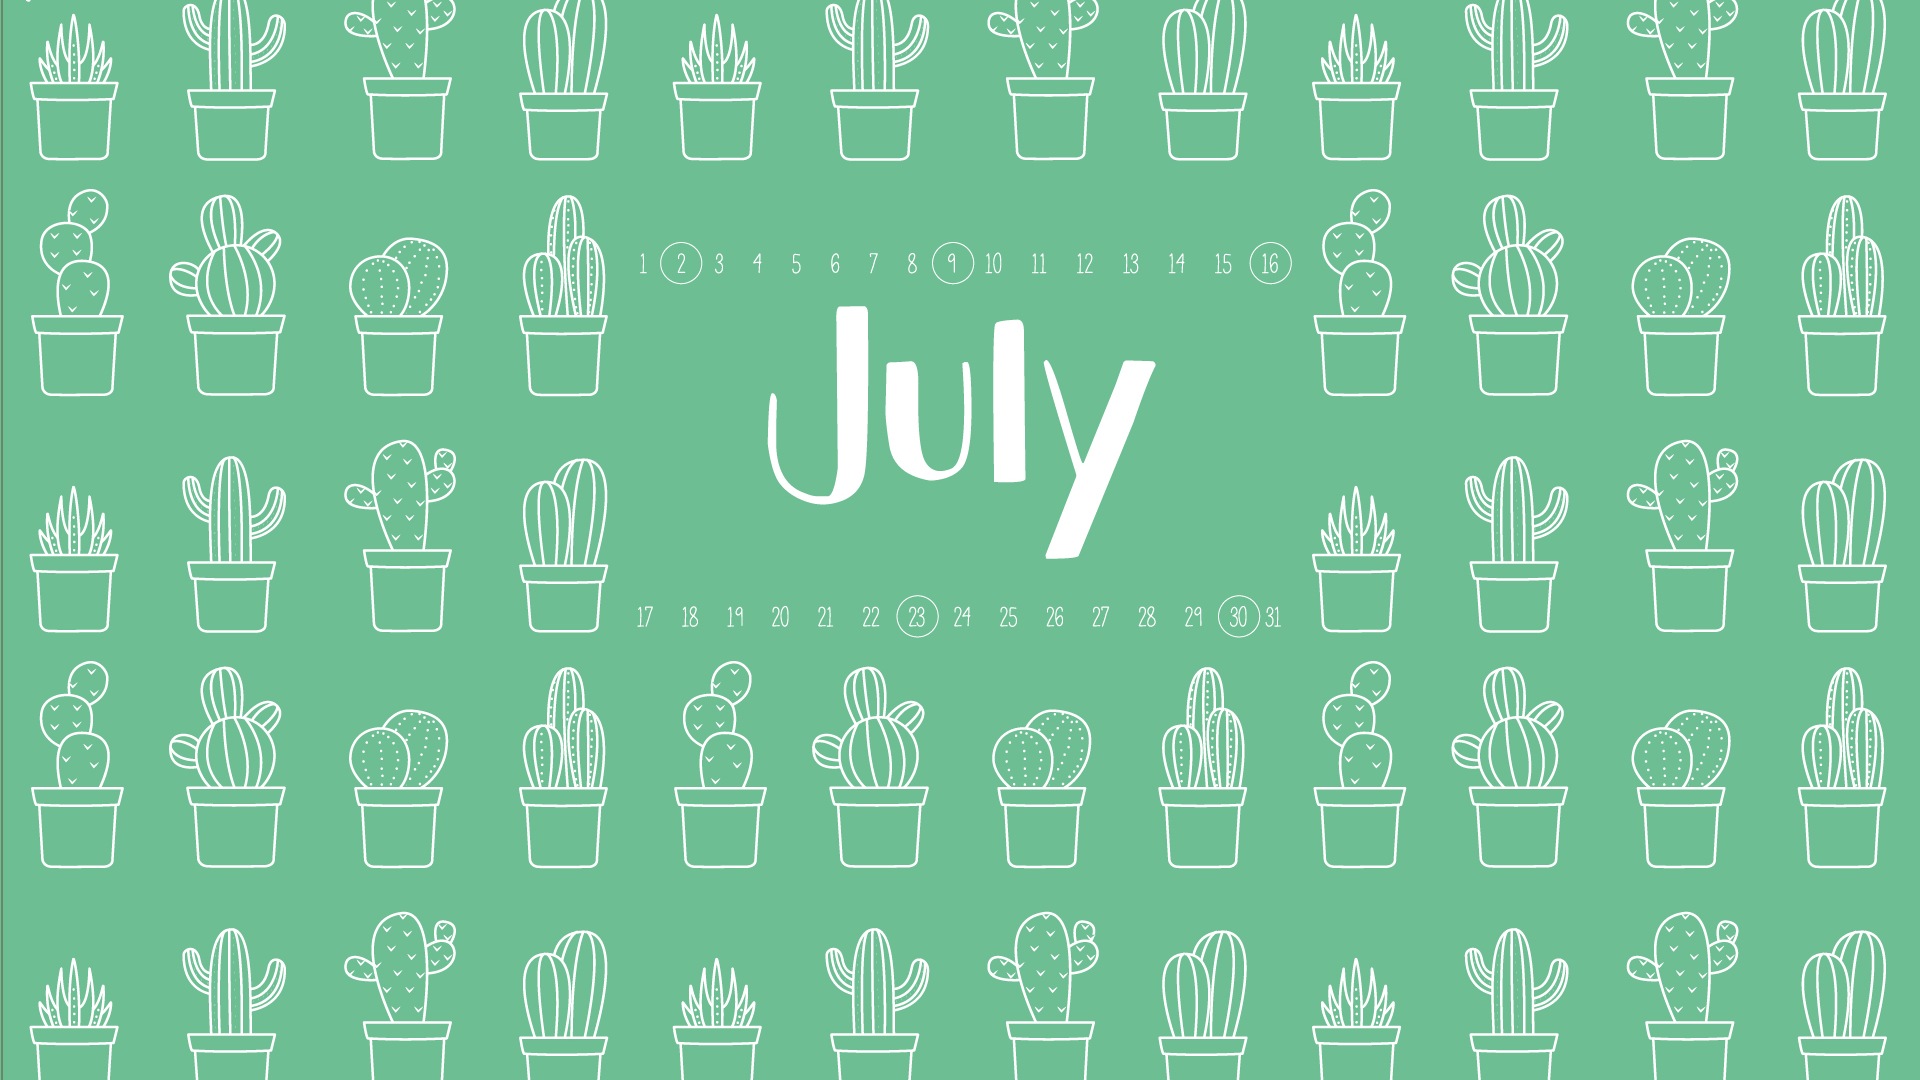 July 2017 calendar wallpaper #3 - 1920x1080